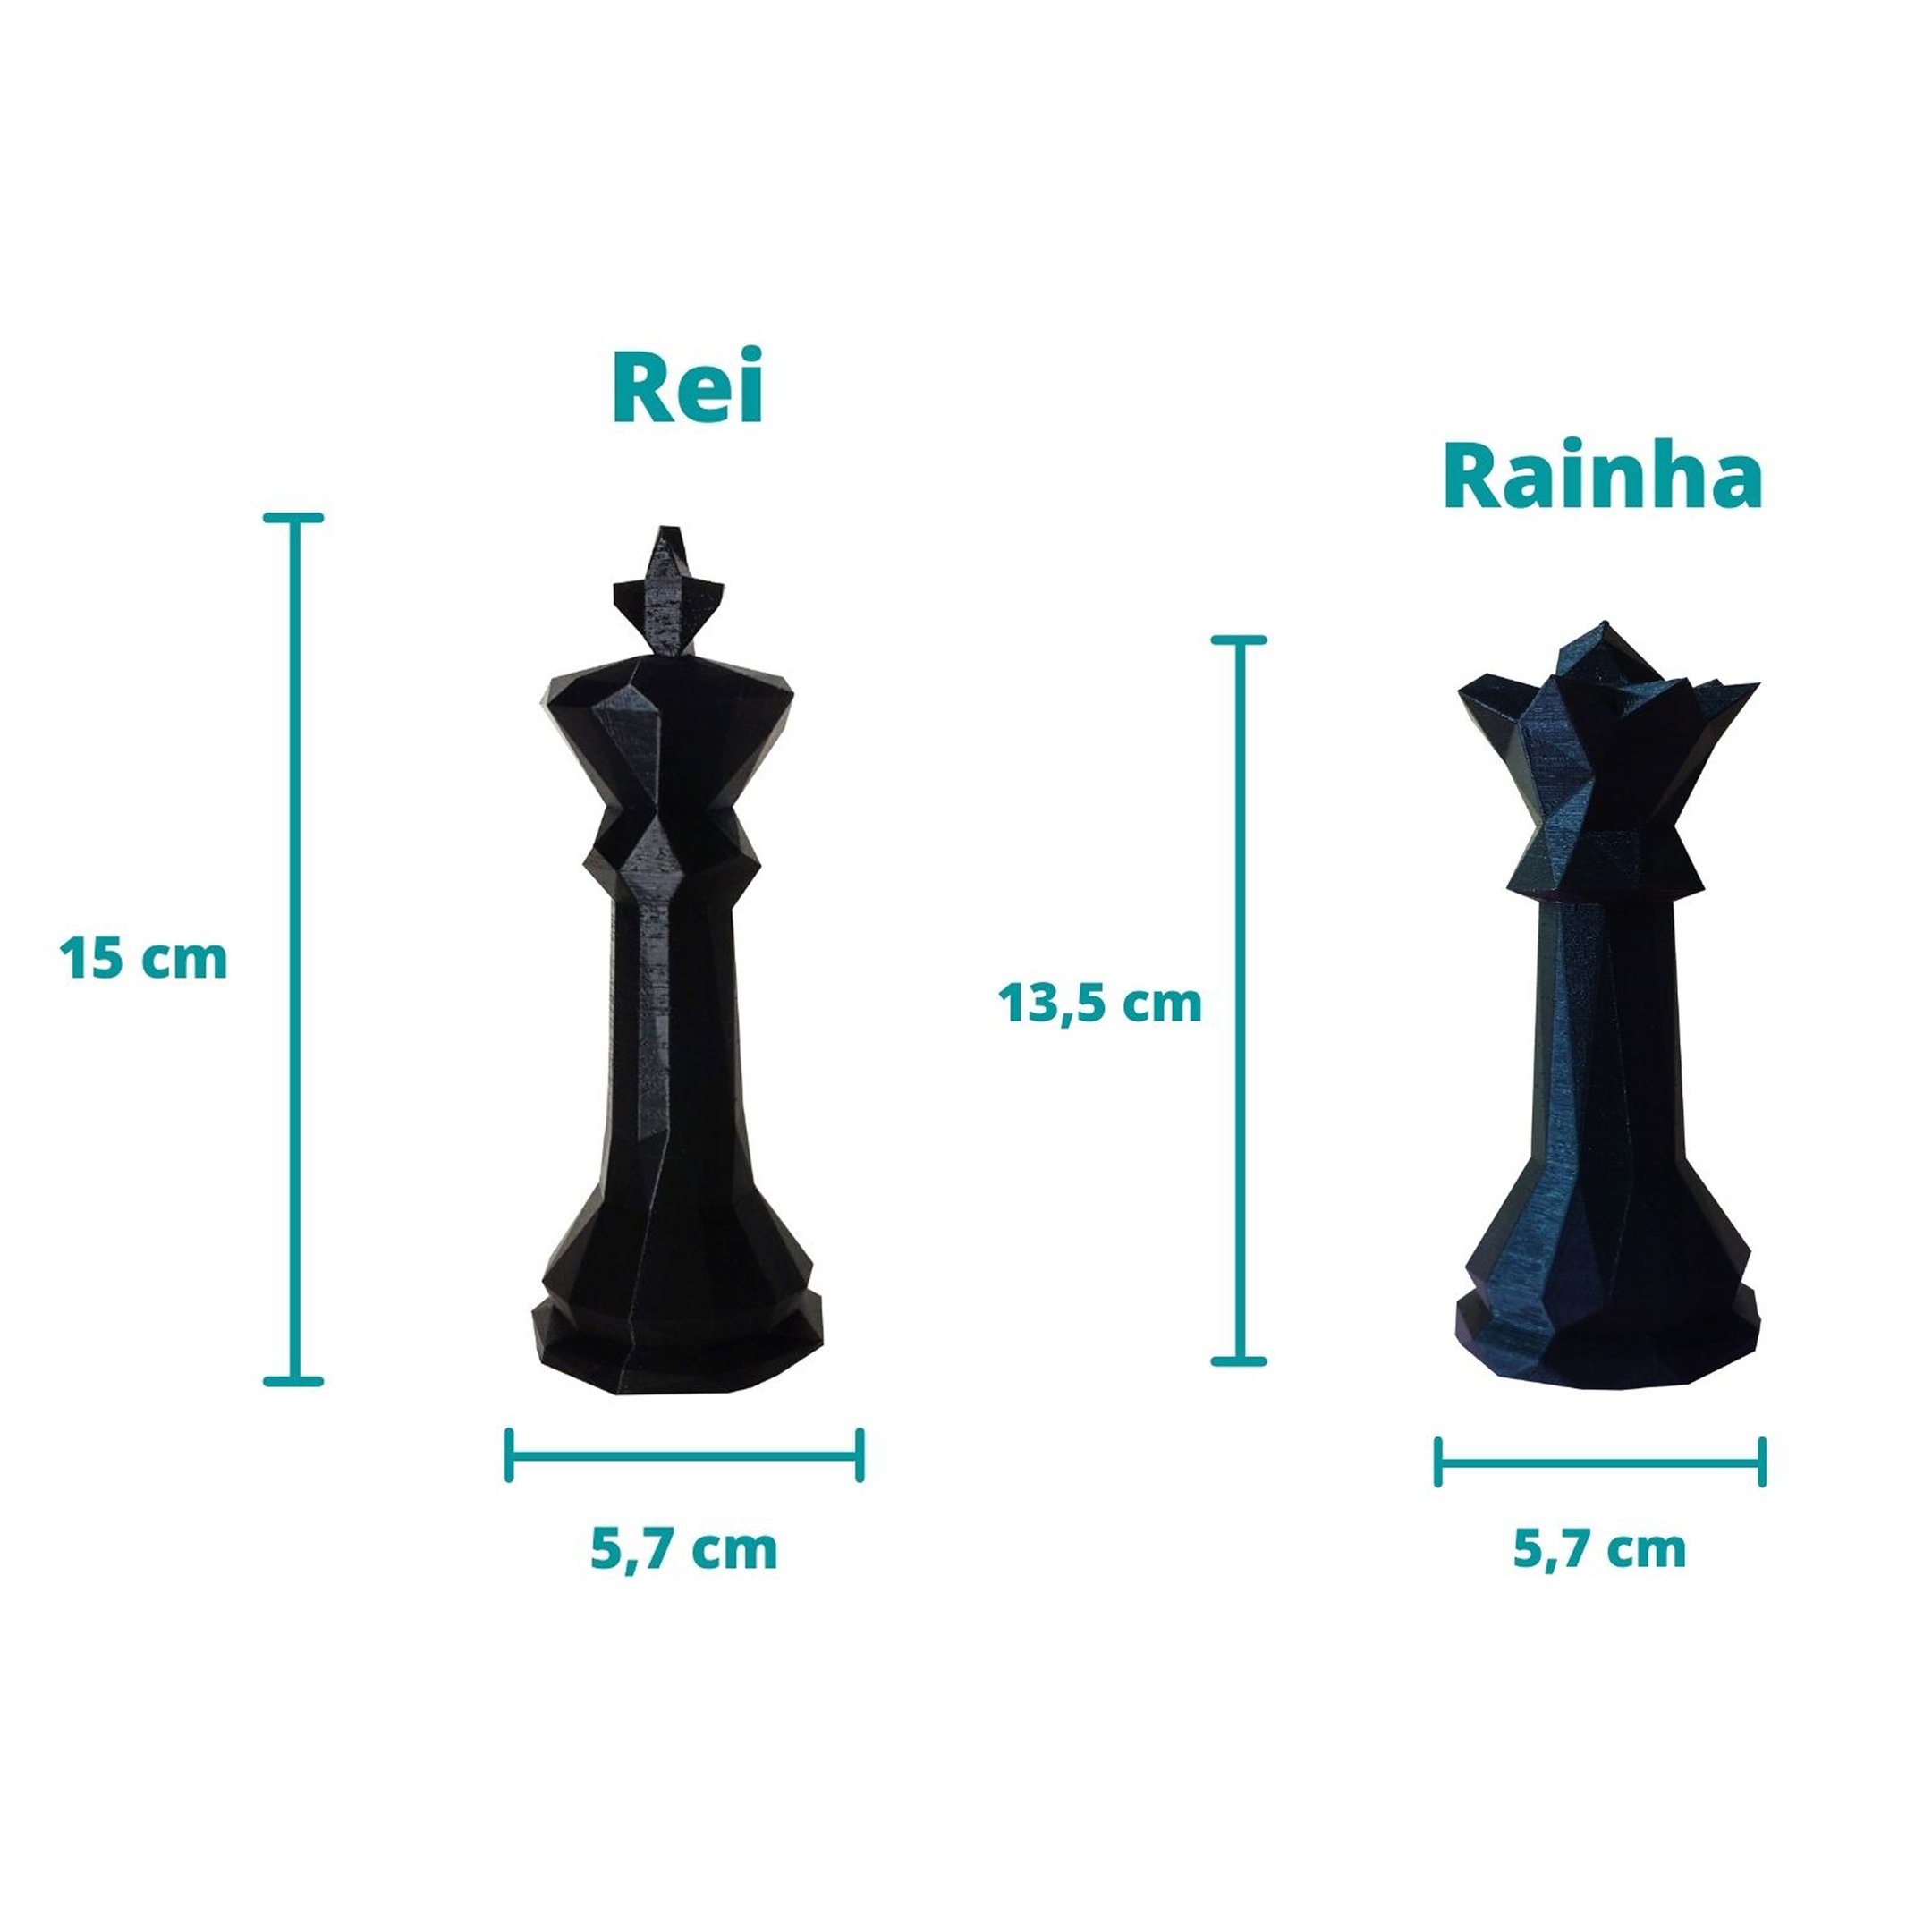 Estatuetas Rei e Rainha - Peças decorativas De Xadrez - Decoração - Toque 3D:Branco - 2